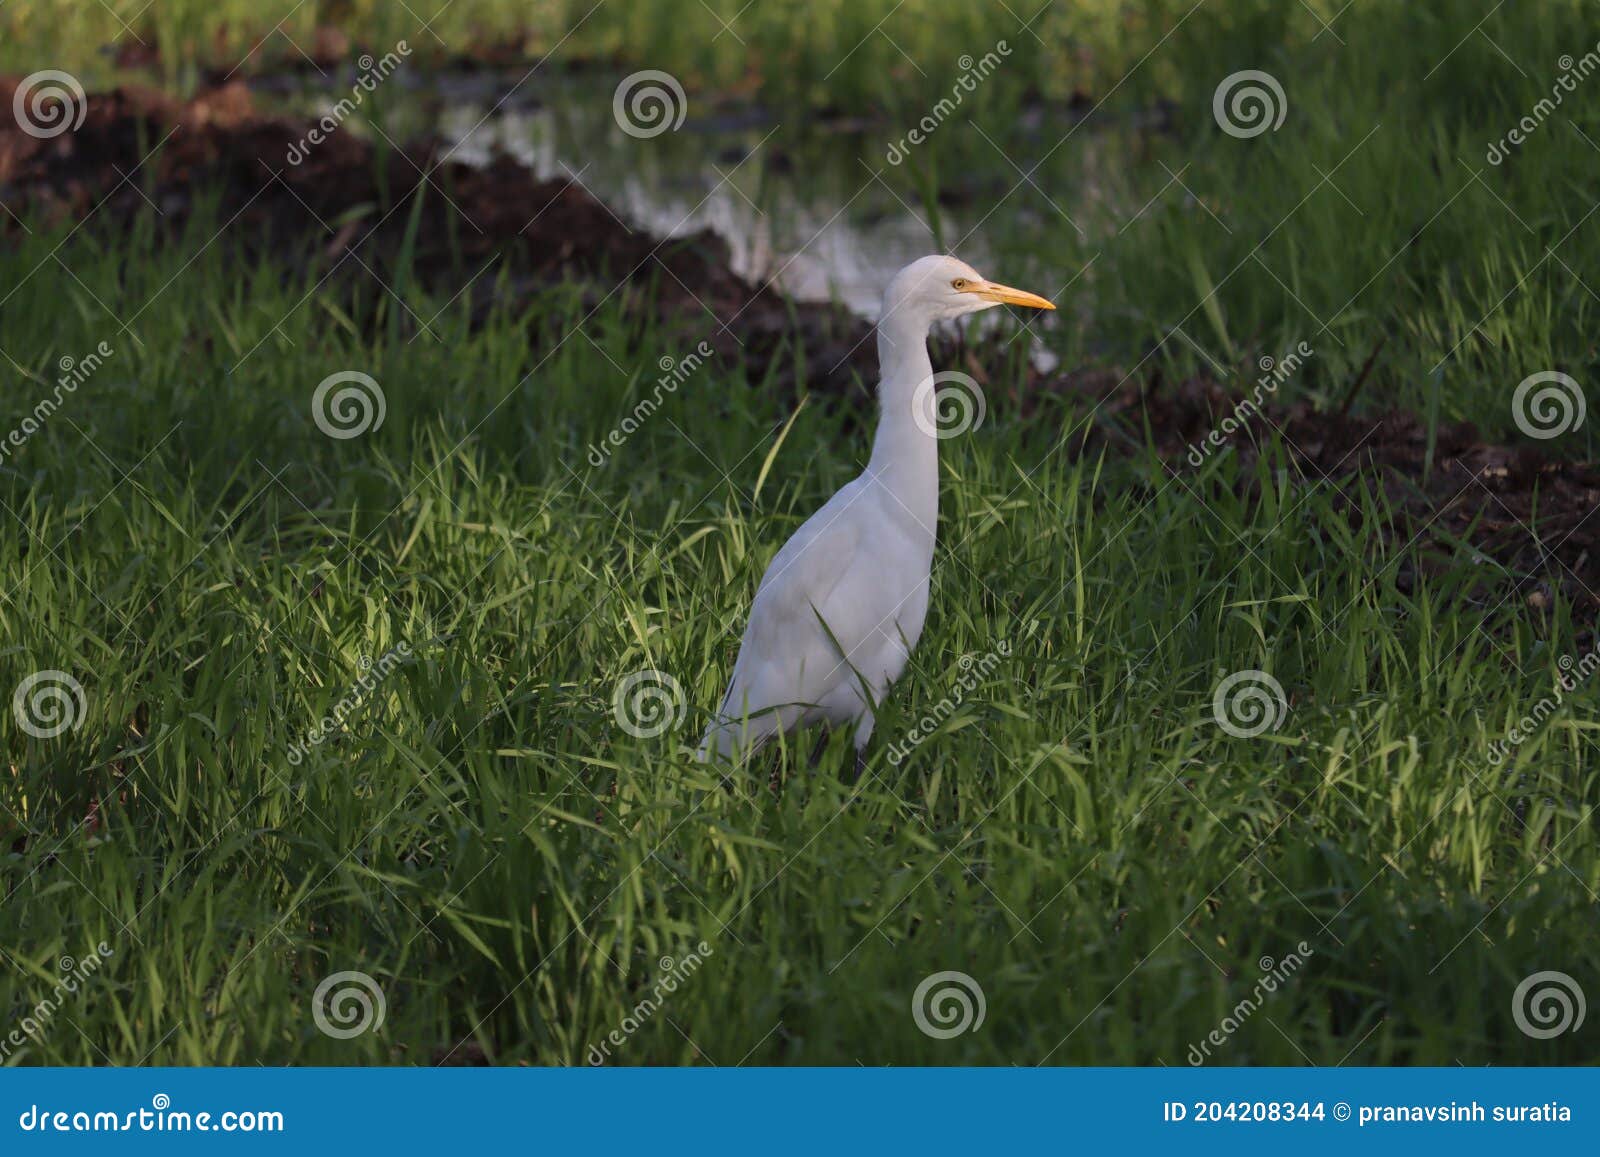 带你认识海珠湿地常见鸟类~ _湿地保护_www.shidicn.com